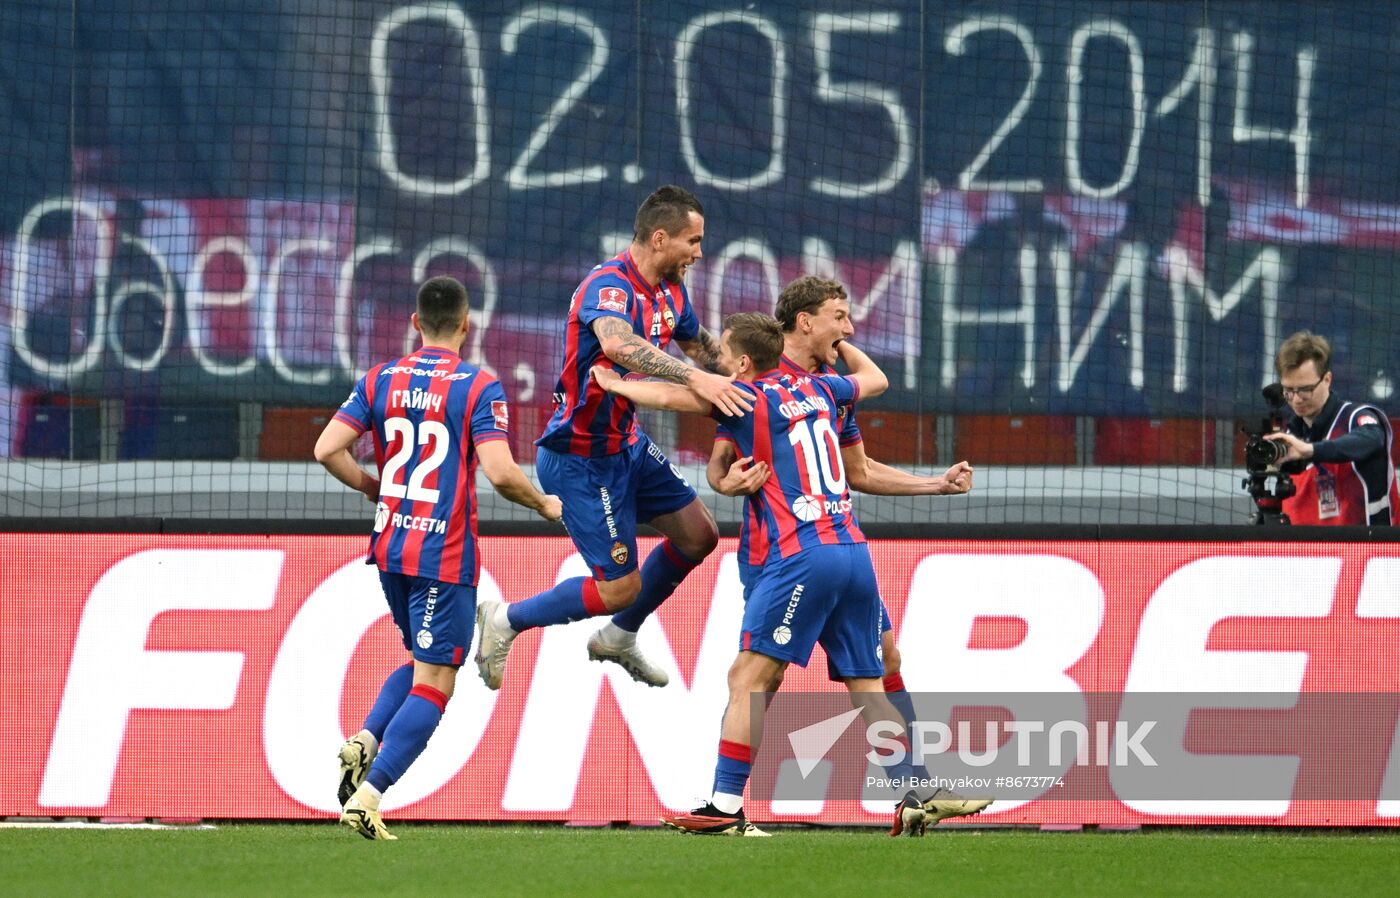 Russia Soccer Cup CSKA - Zenit